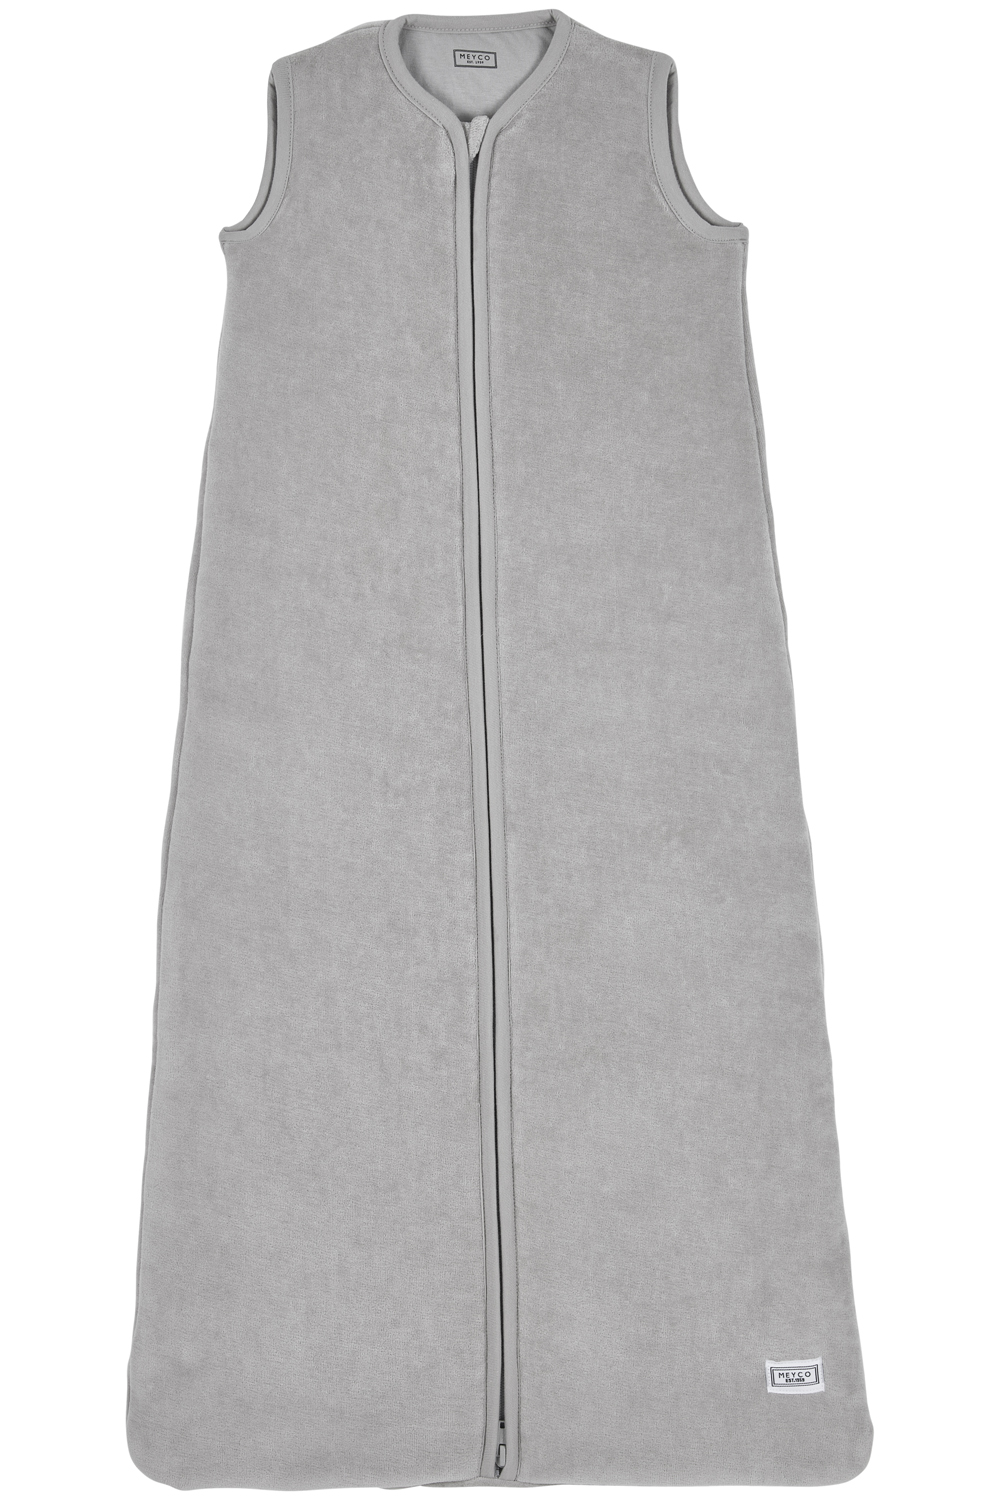 Sleepingbag lined Velvet - light grey - 90cm